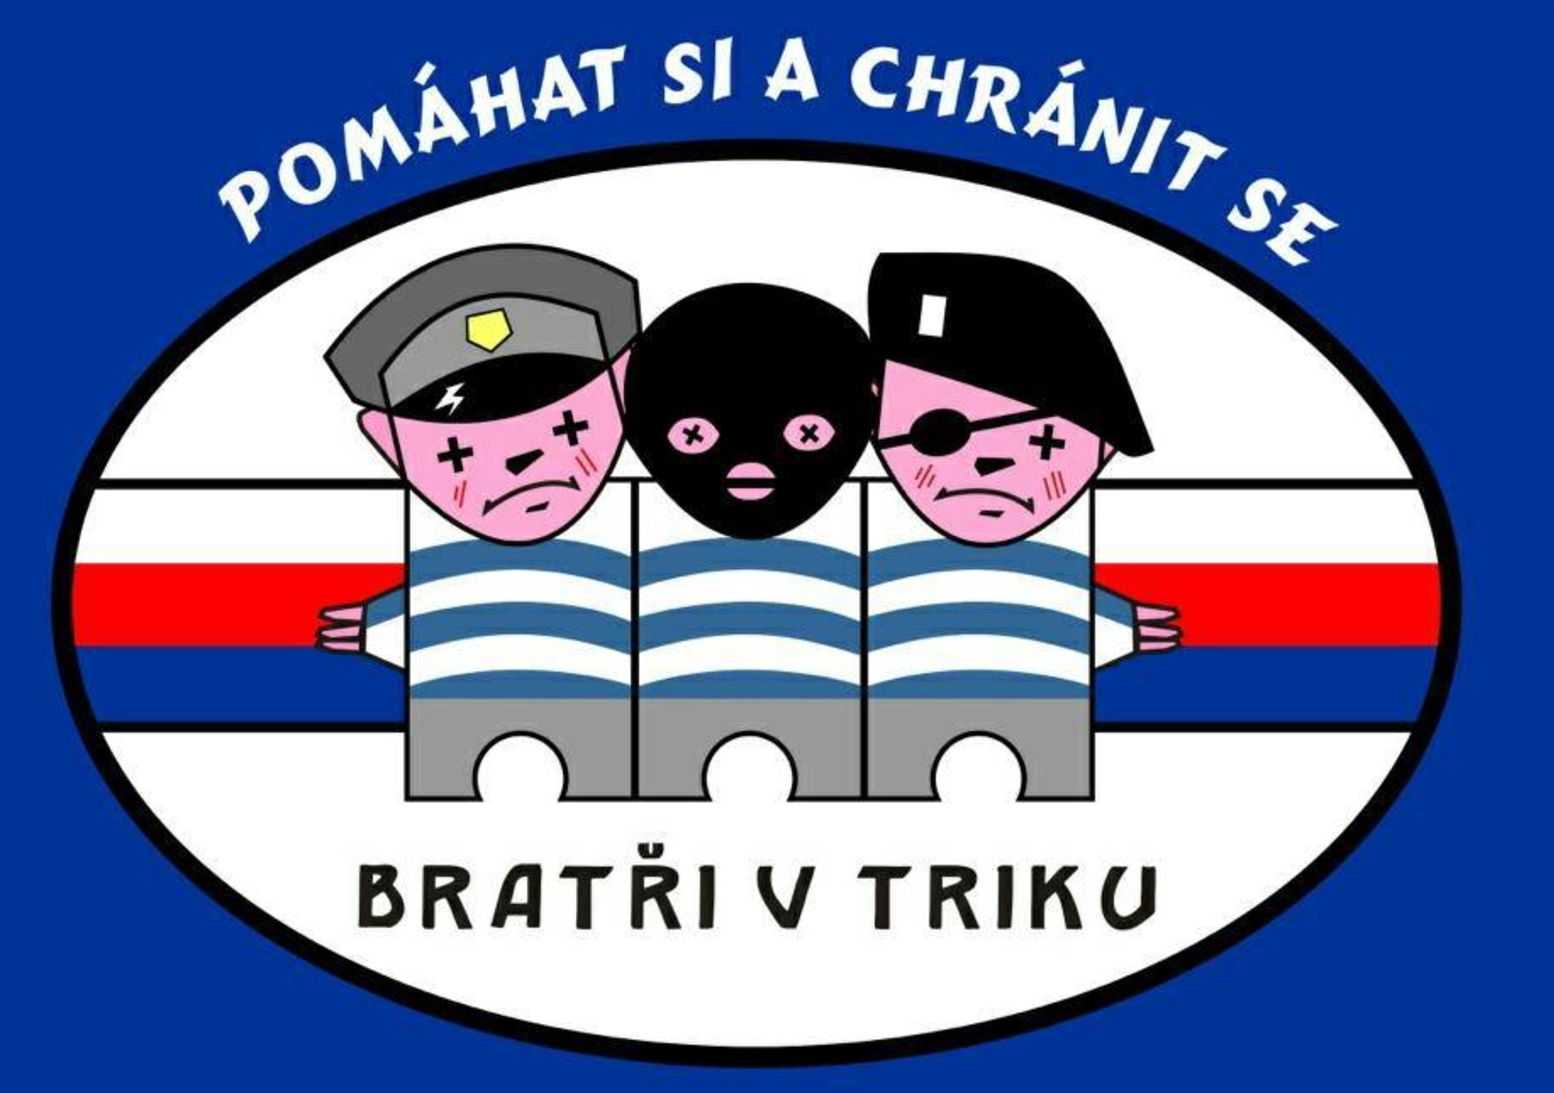 Policisté i expolicisté si pod vedením Ratajského založili speciální spolek. Říkali si Bratři v triku.